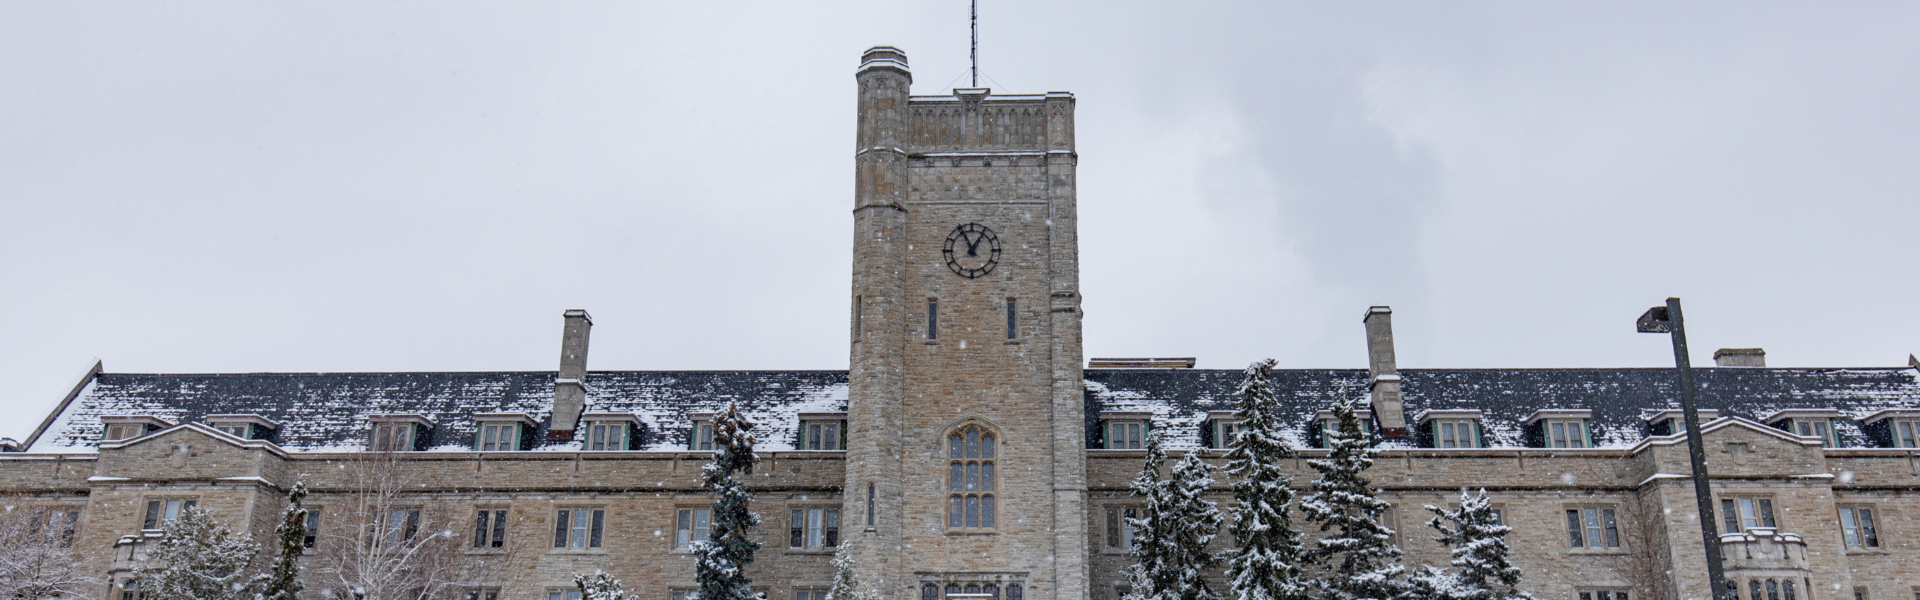 Johnston Hall against a cloudy sky on a snowy day.